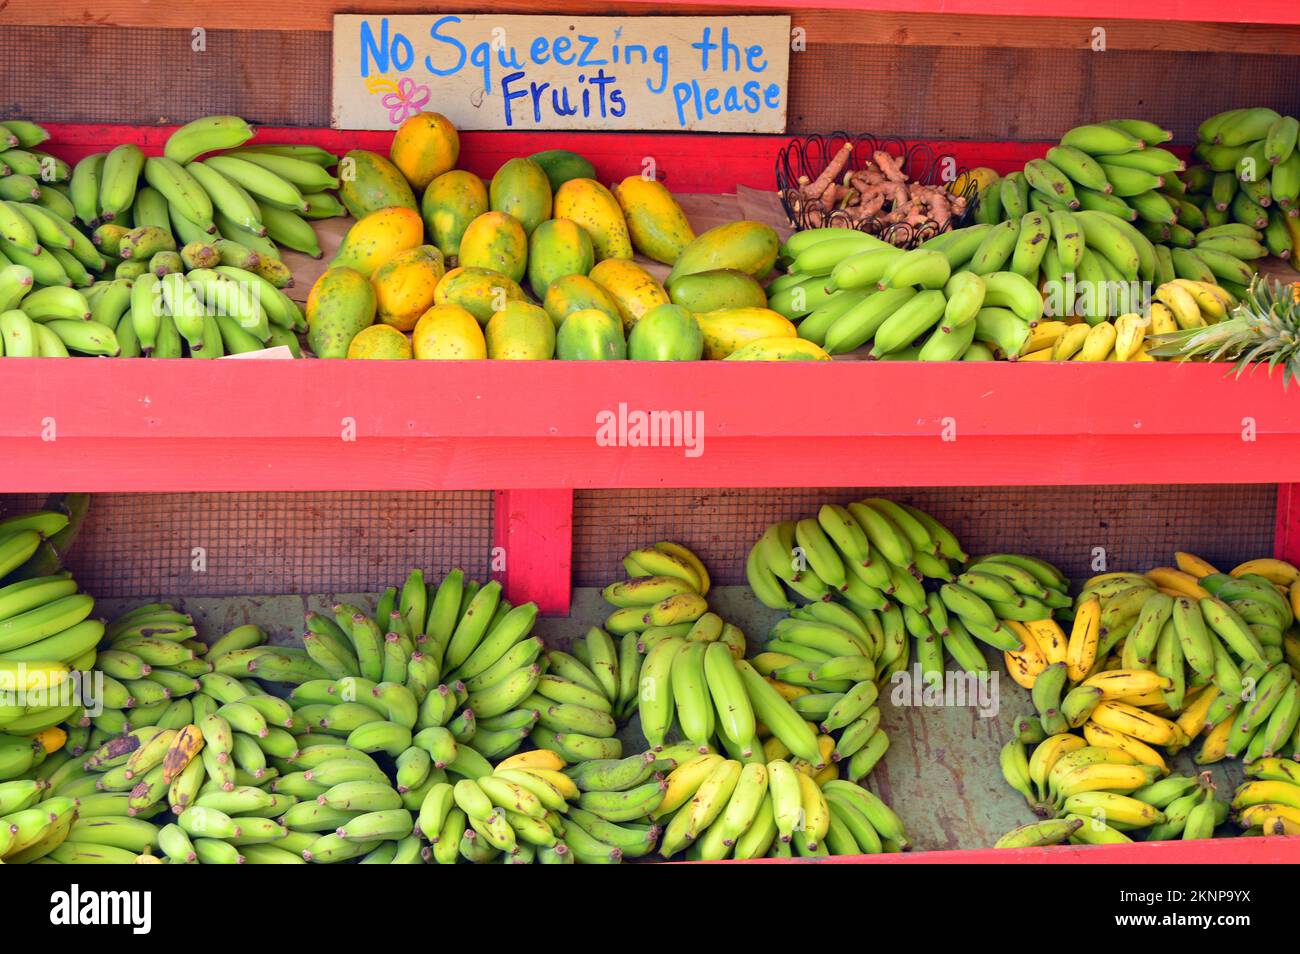 Los plátanos y las guayabas están tan maduros; se recuerda a los clientes que eviten el impulso de apretar Foto de stock